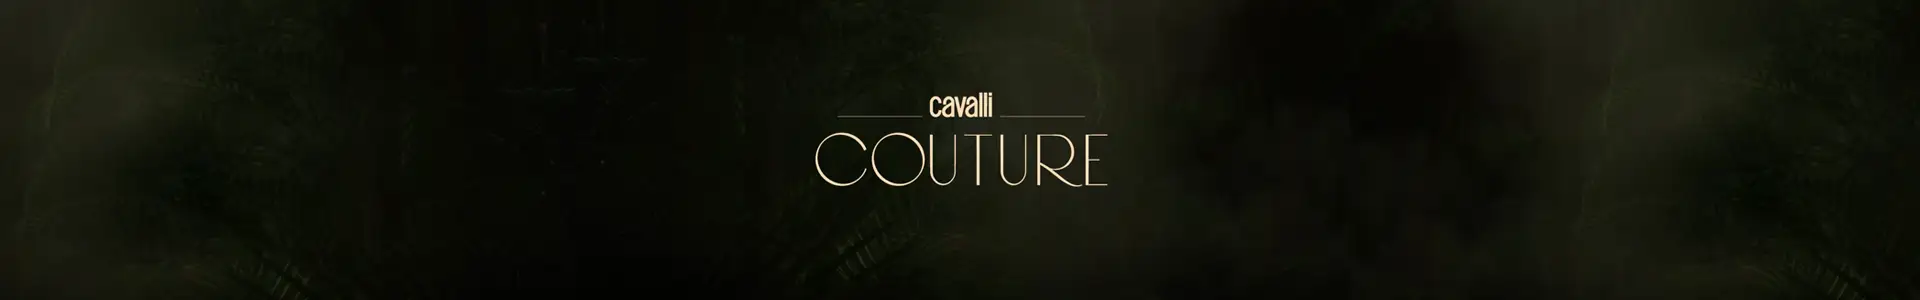 Damac Cavalli Couture Floor Plan